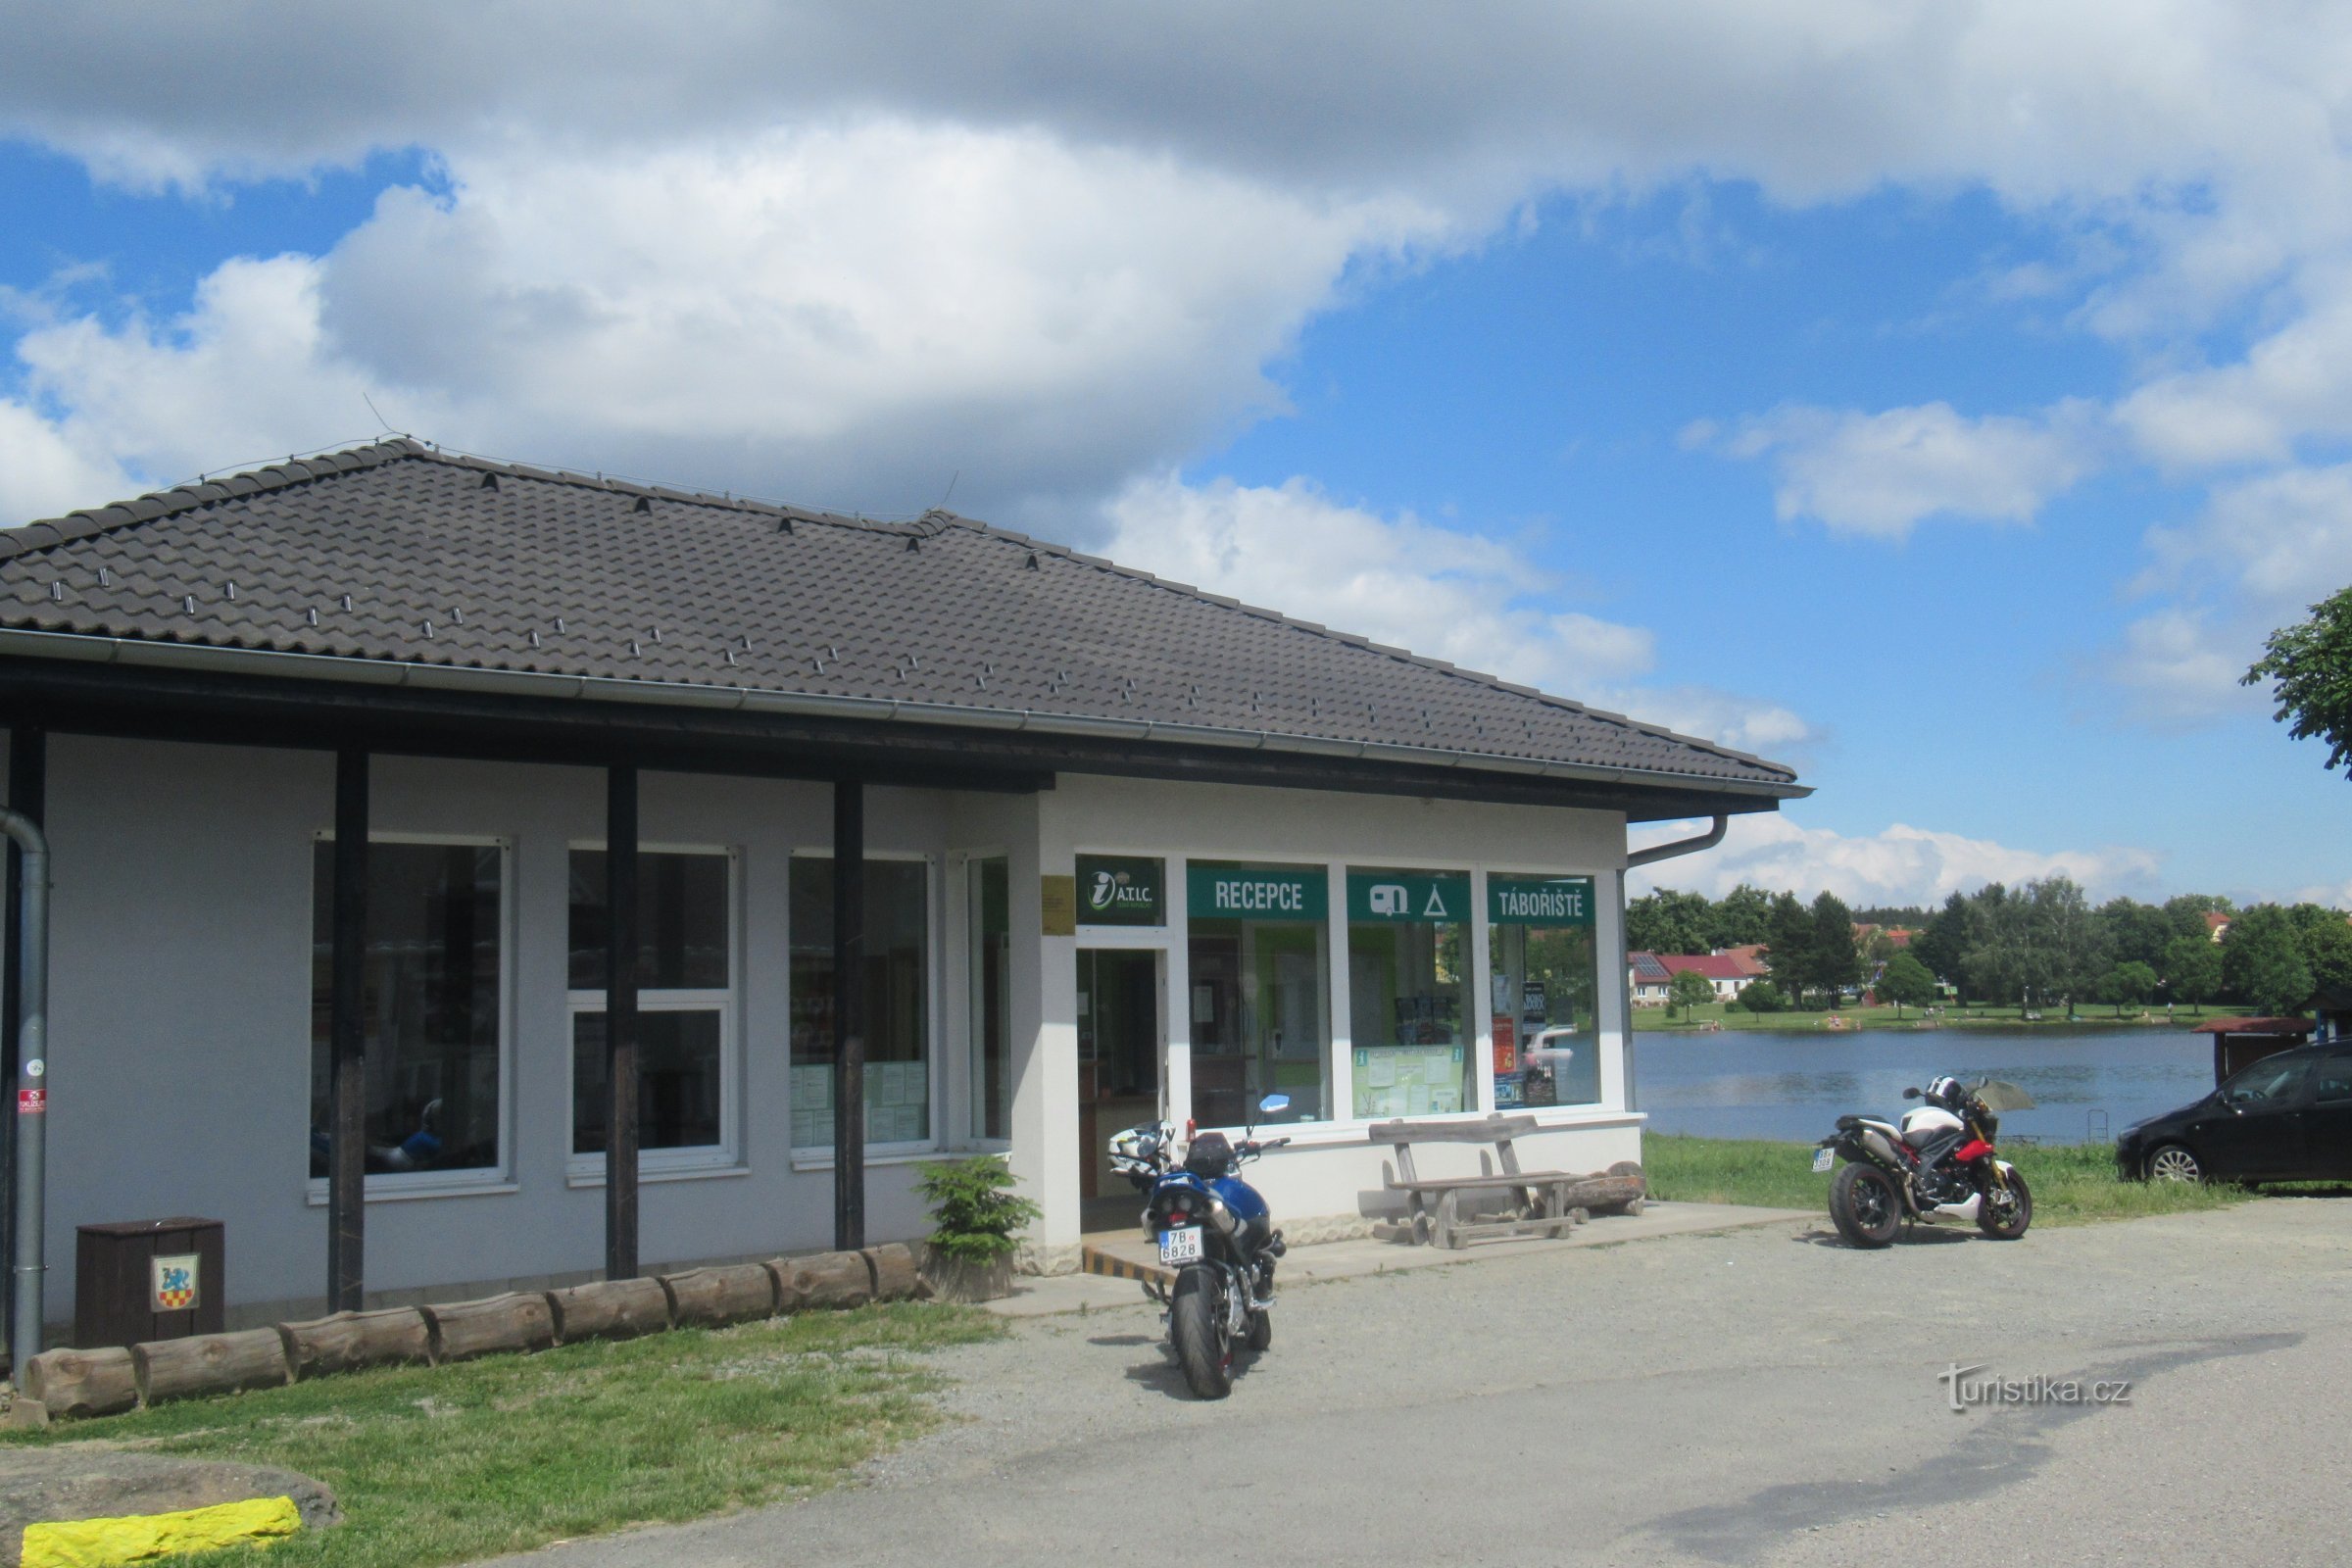 Suchý - Turistinformationscenter